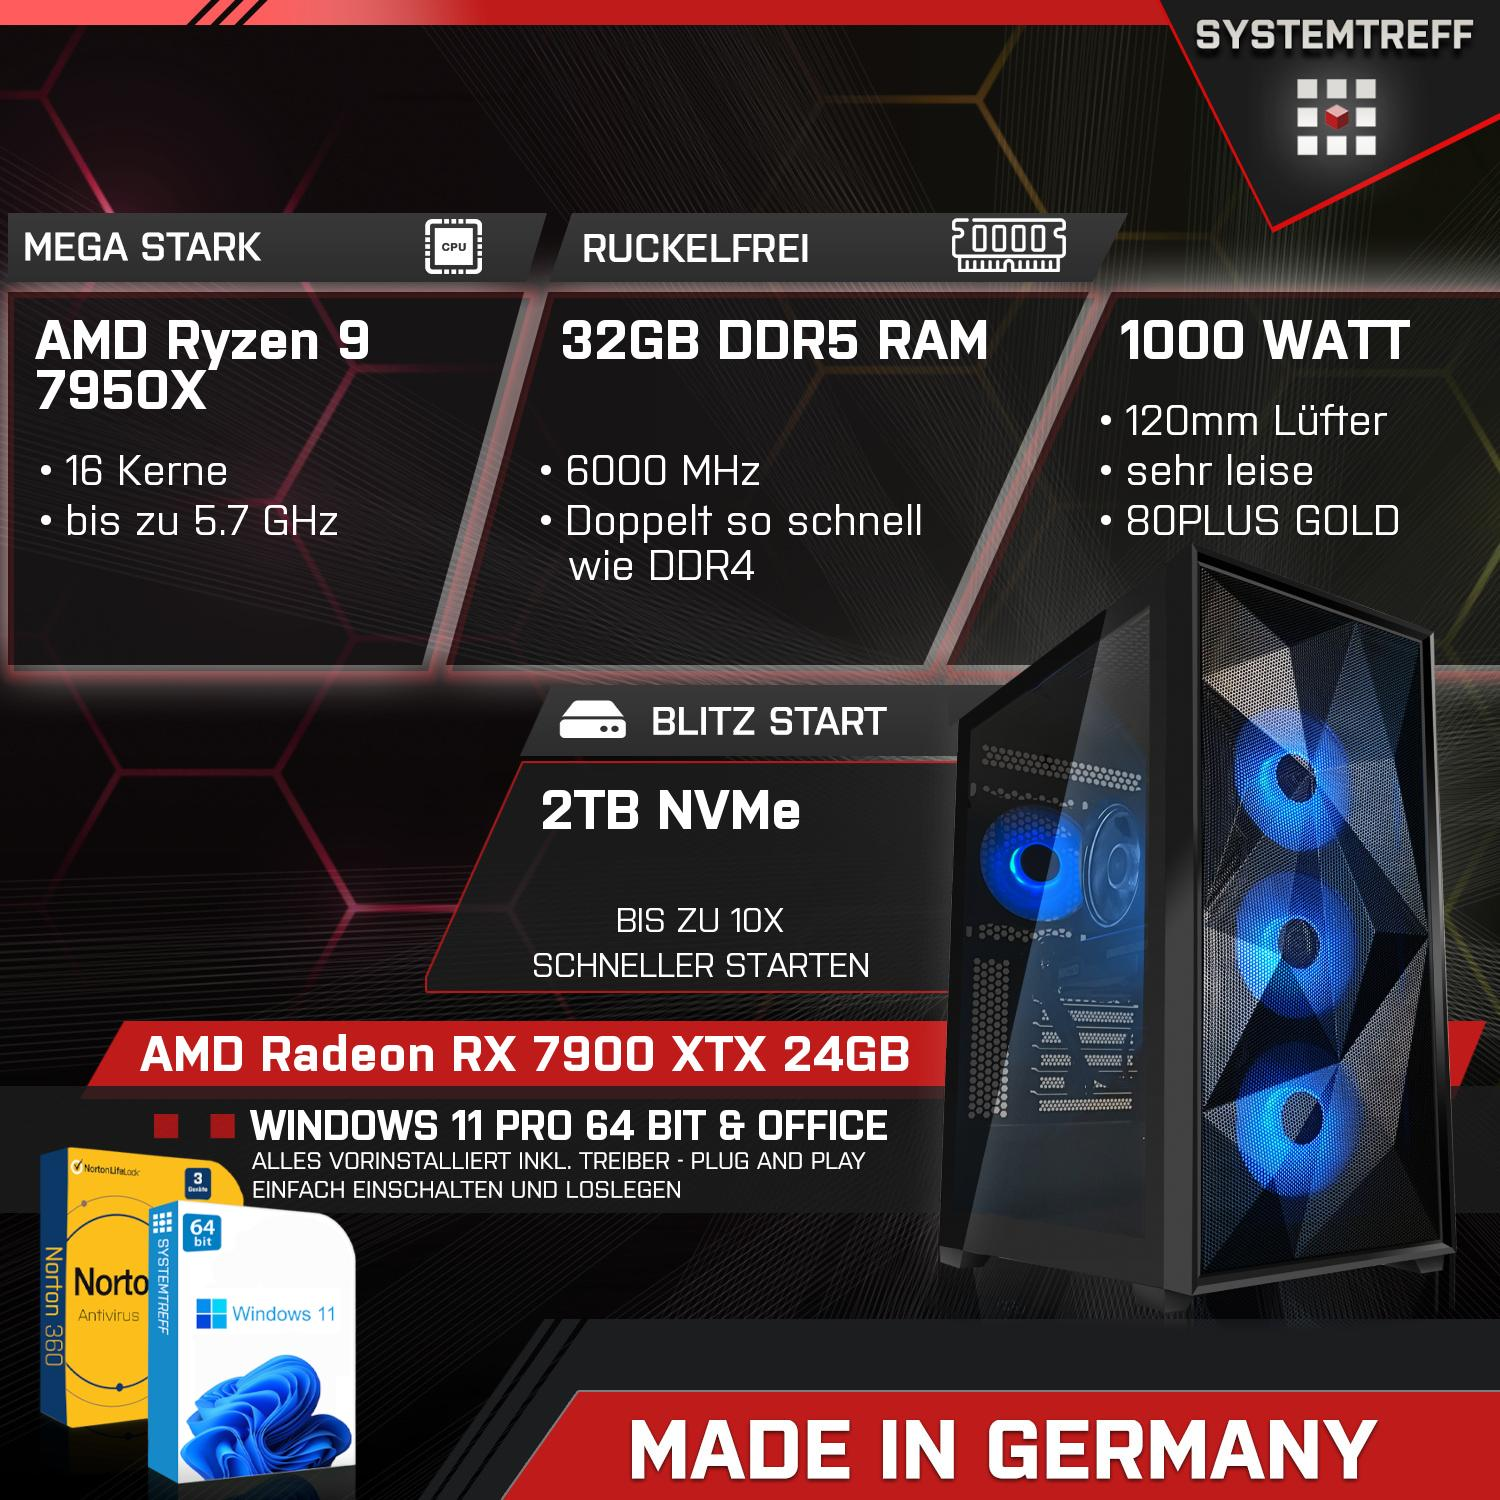 SYSTEMTREFF Gaming Komplett AMD Ryzen 24 24GB RX 32 Prozessor, GDDR6, GB 7900 7950X RAM, 9 PC XTX mSSD, GB AMD 7950X, mit GB Komplett Radeon 2000